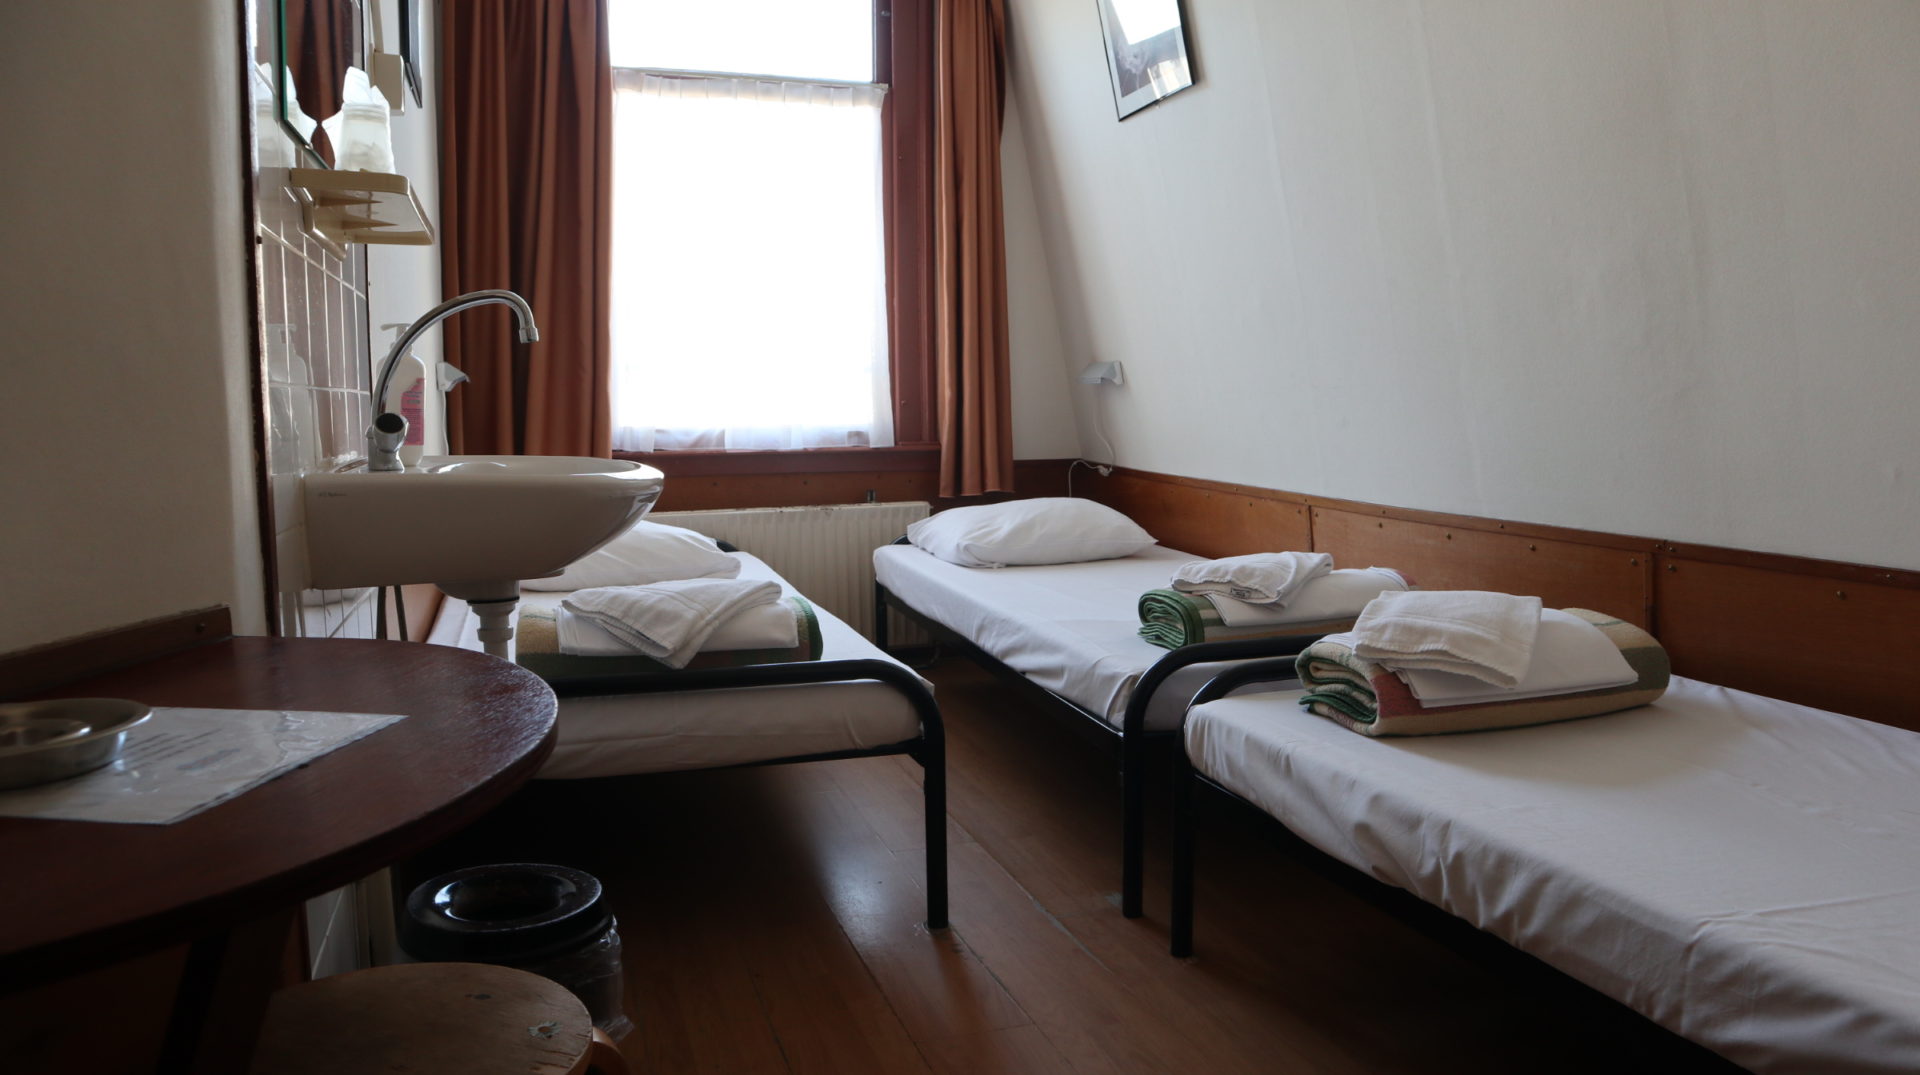 Amsterdam Budget hotel - triple room 2